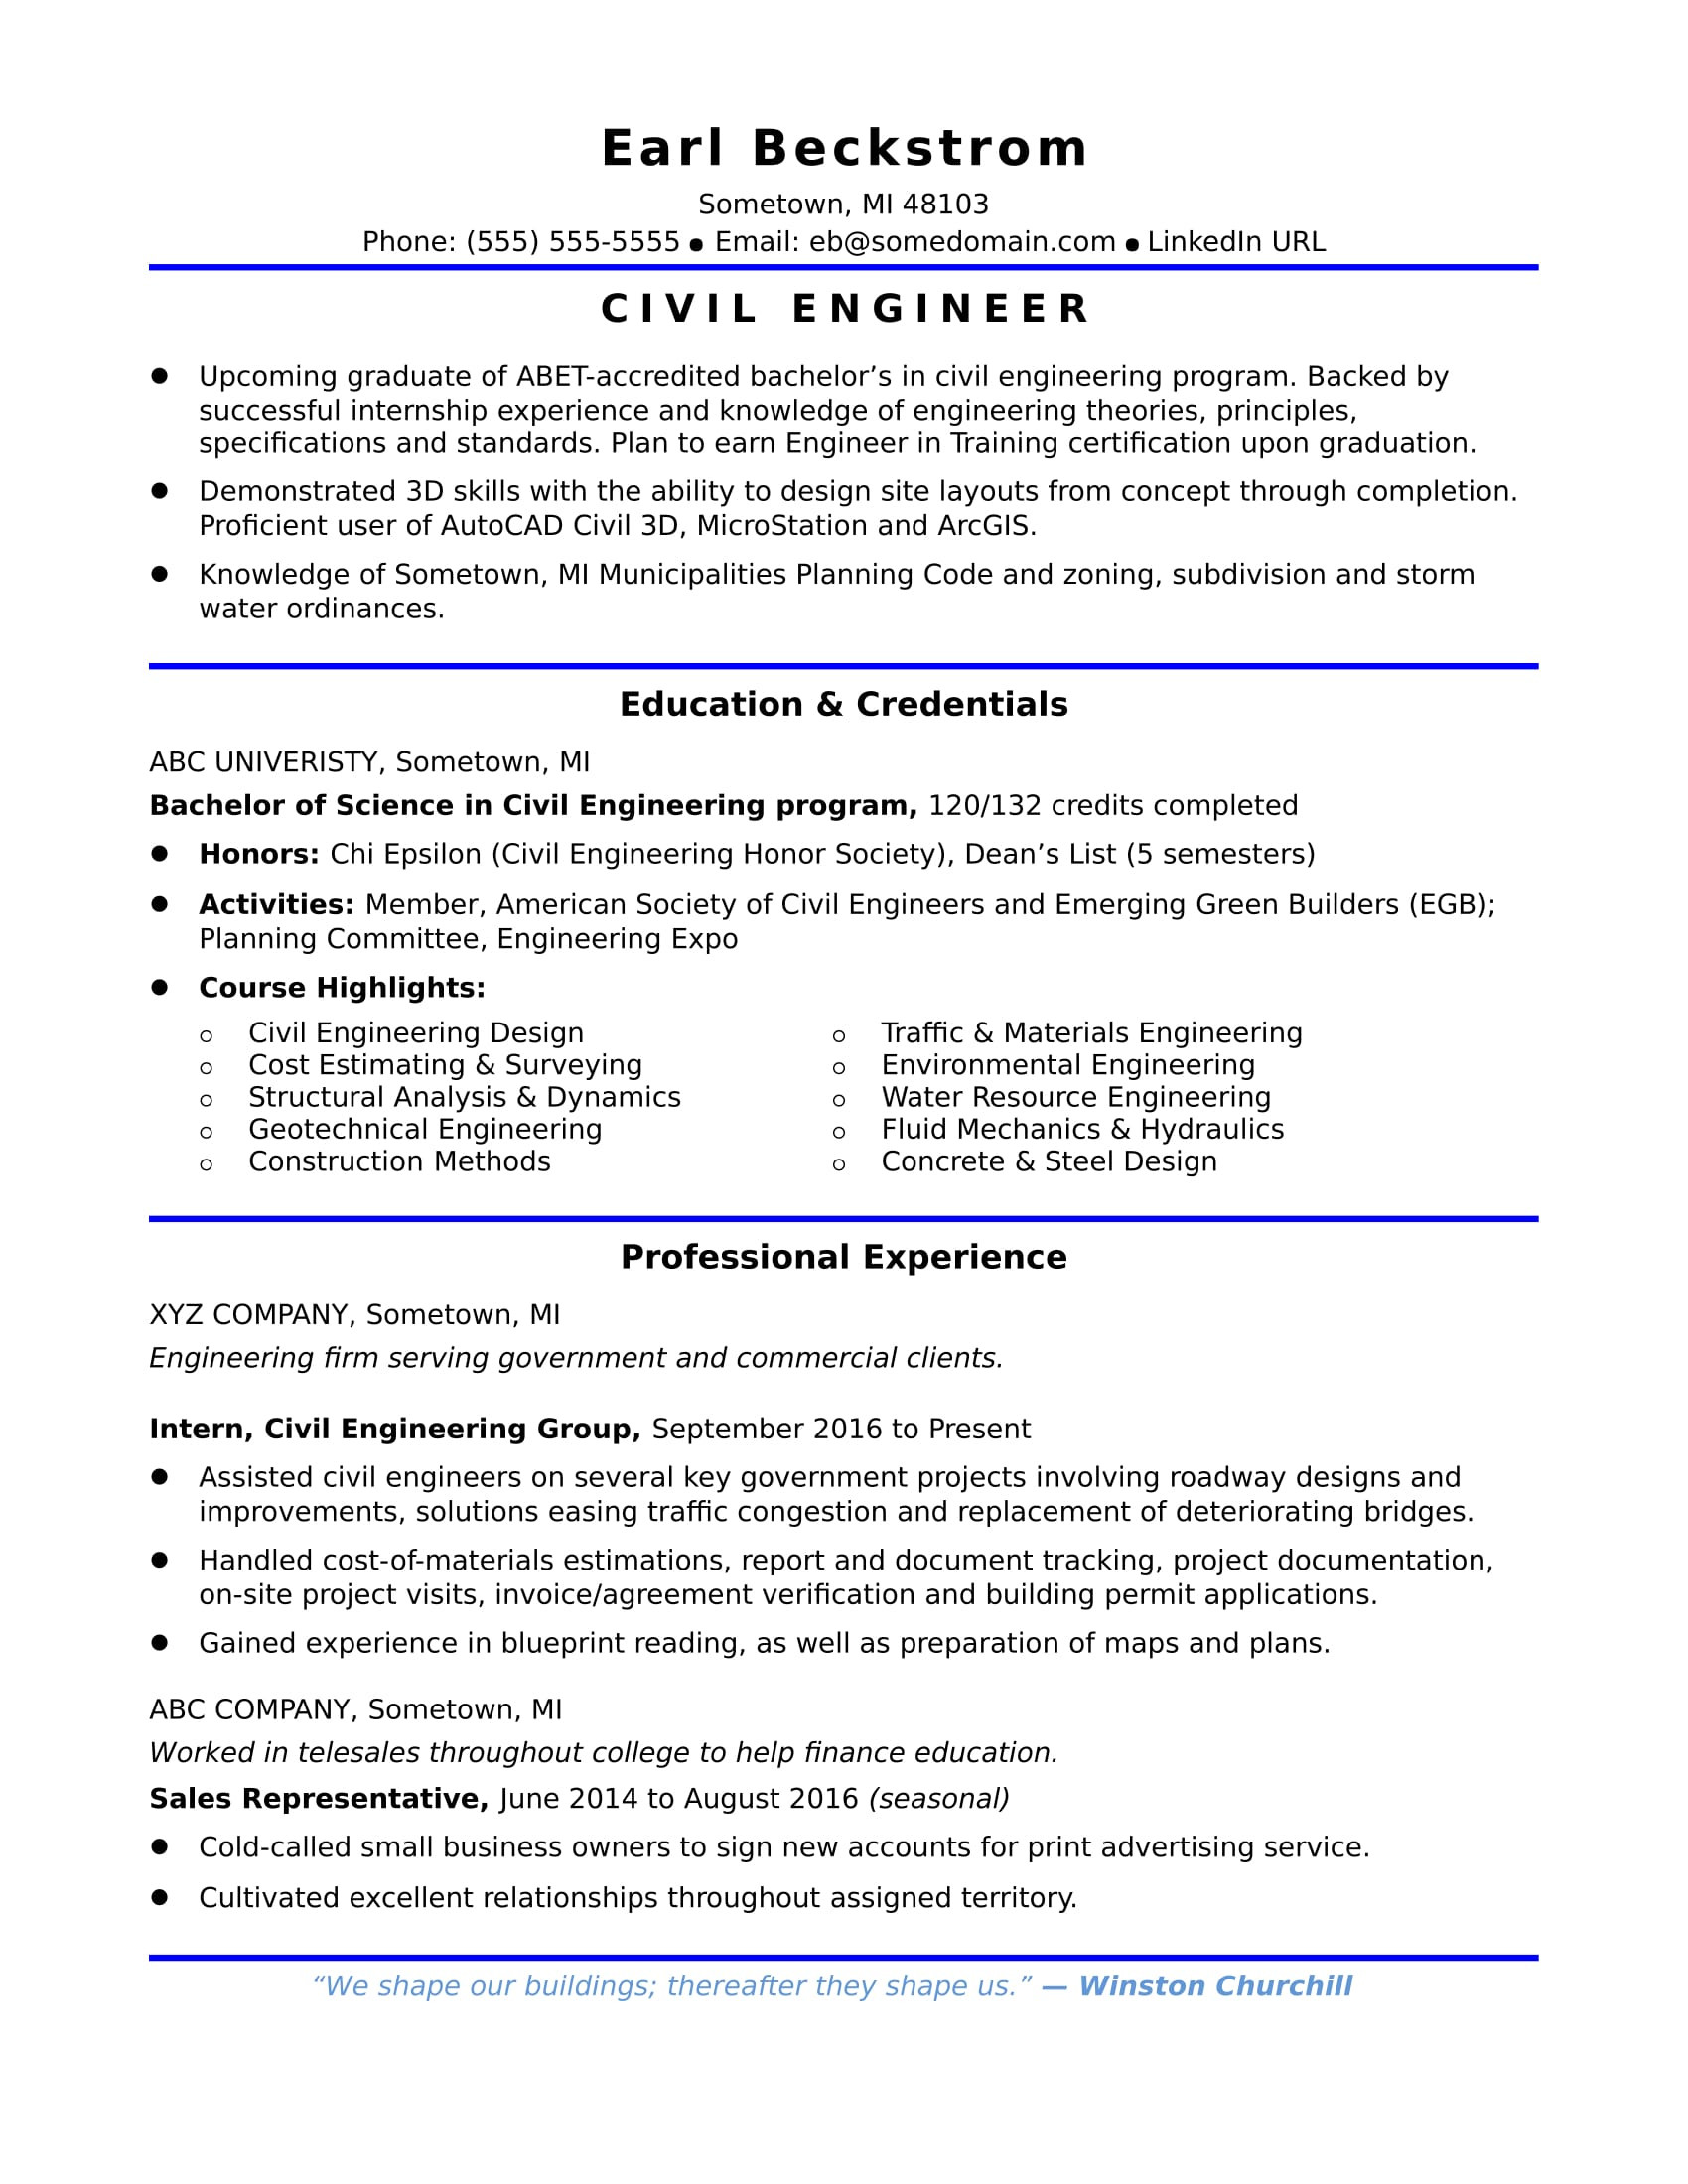 Masters Civil Engineering Student Resume Sample Entry-level Civil Engineering Resume Monster.com